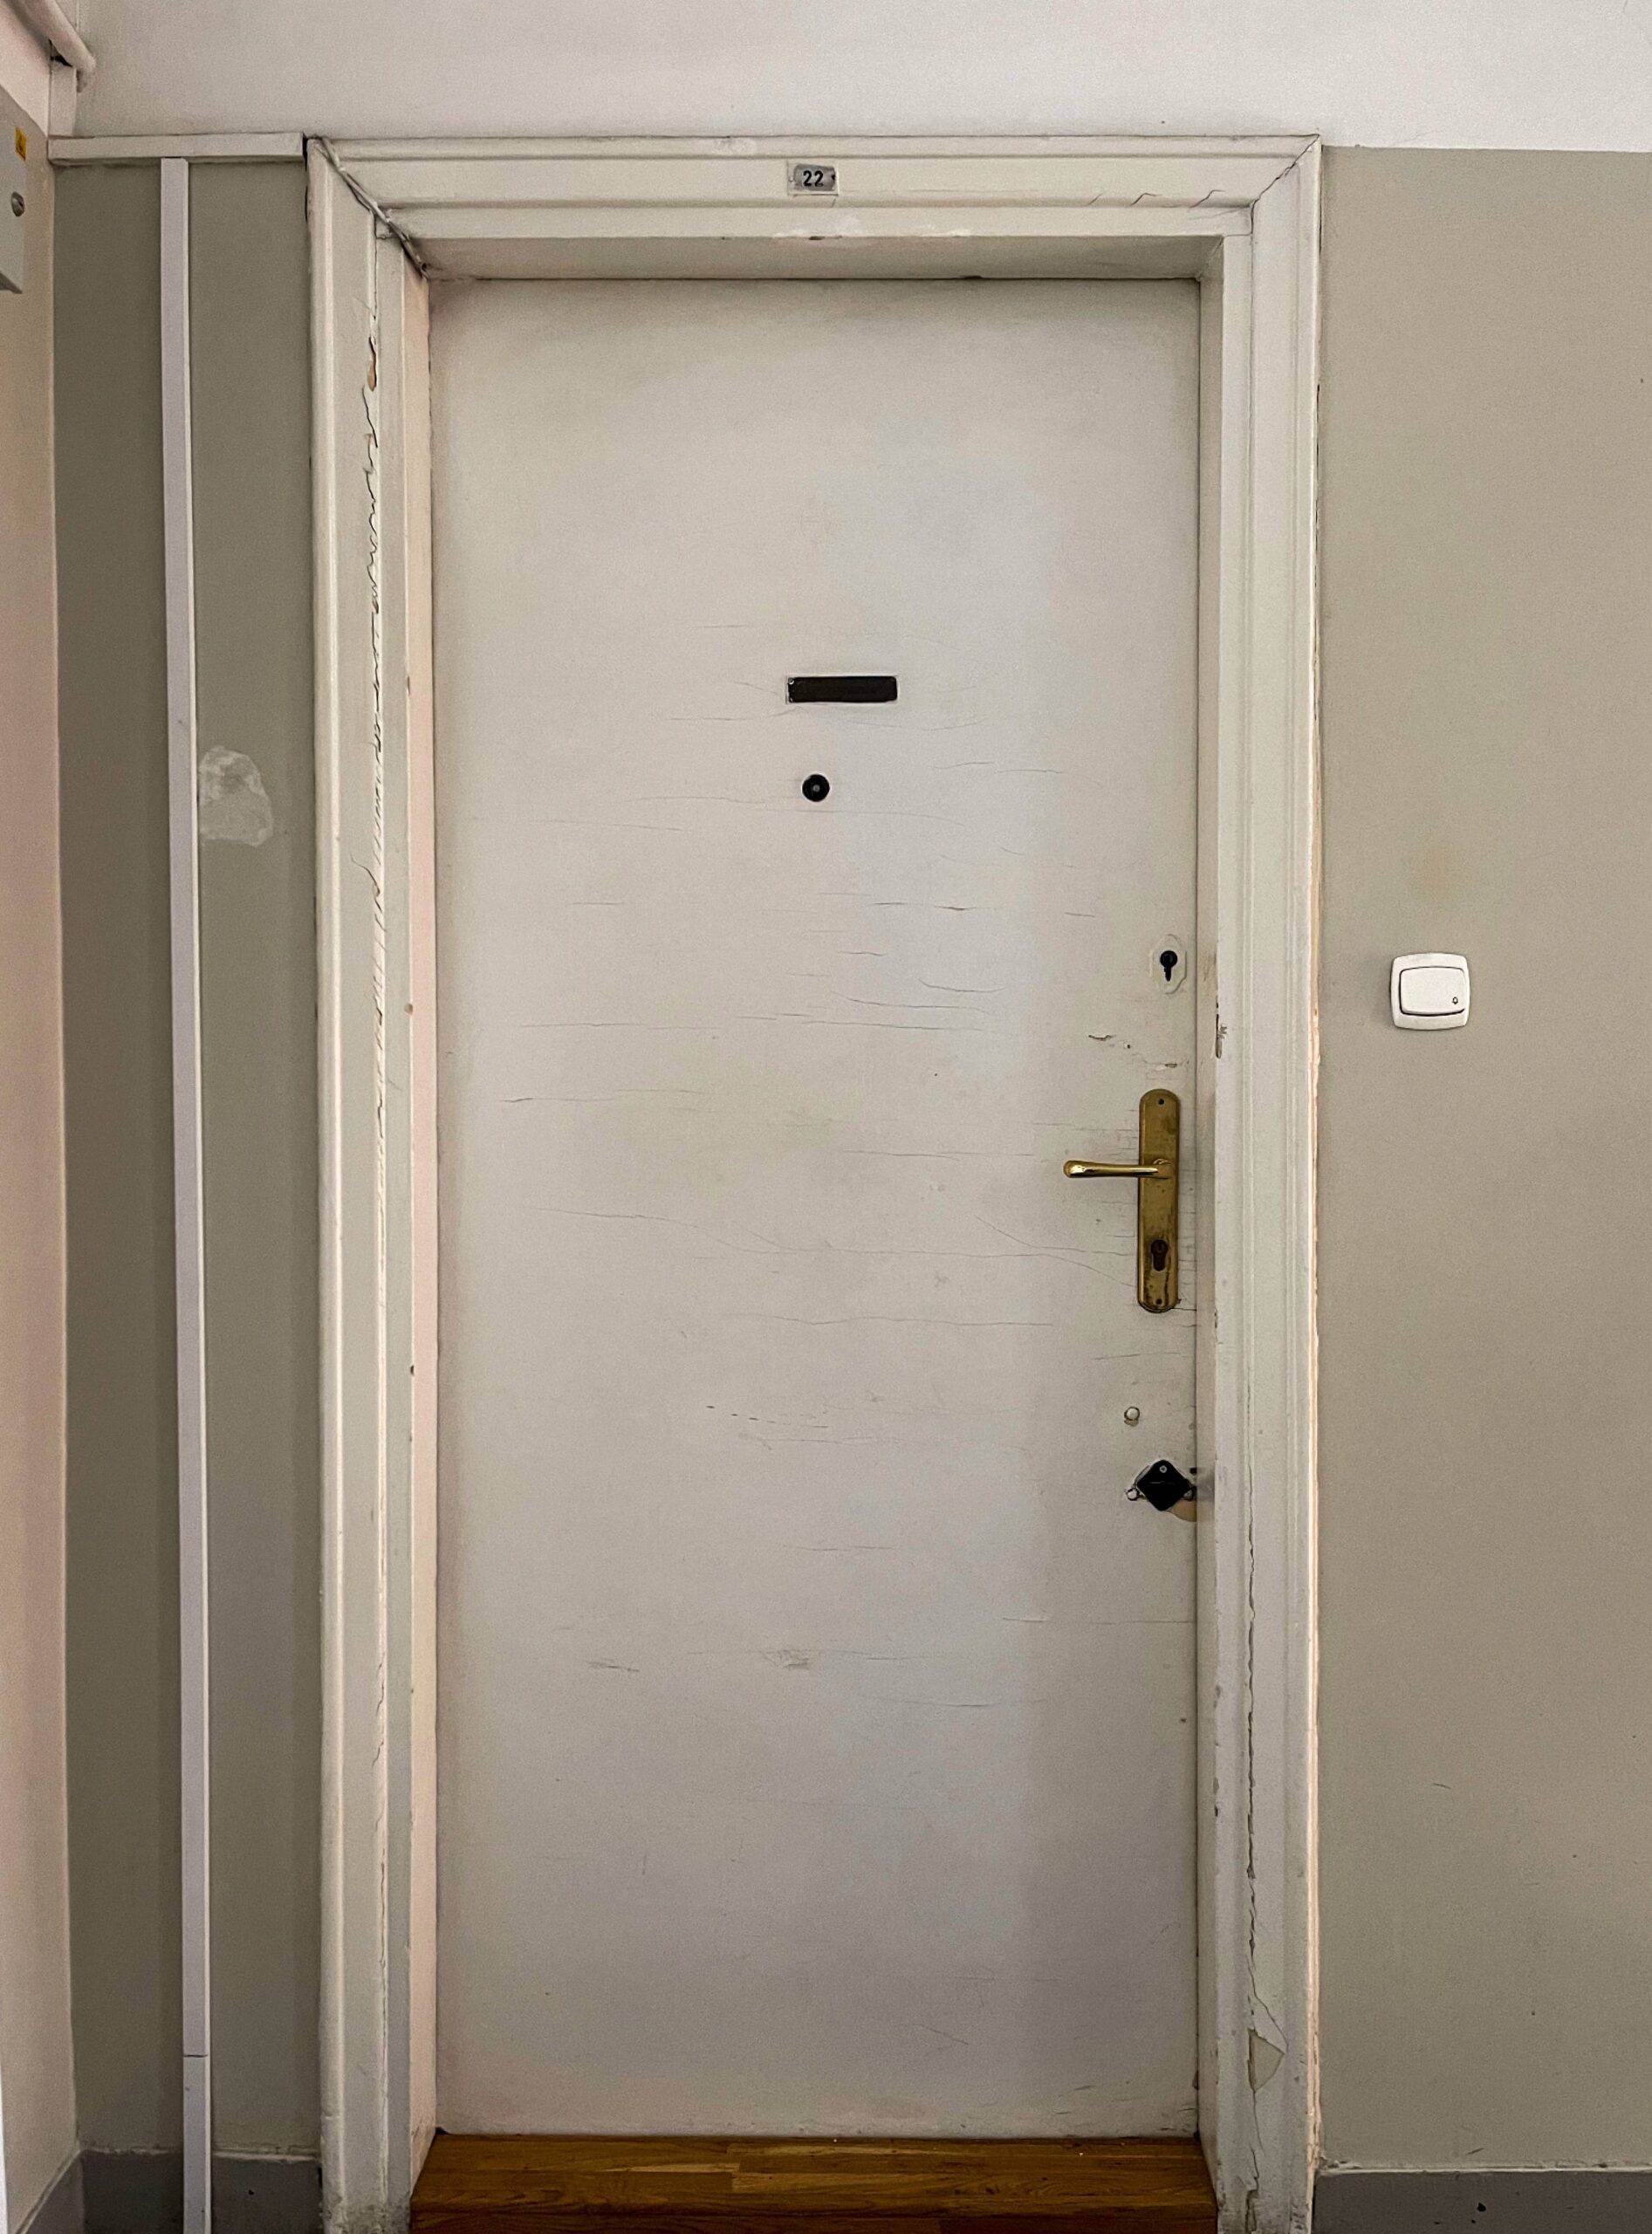 Klatka zachodnia. Piętro III - drzwi do mieszkania. Fot. Mariusz Majewski 2022 r., źródło: AOD III.